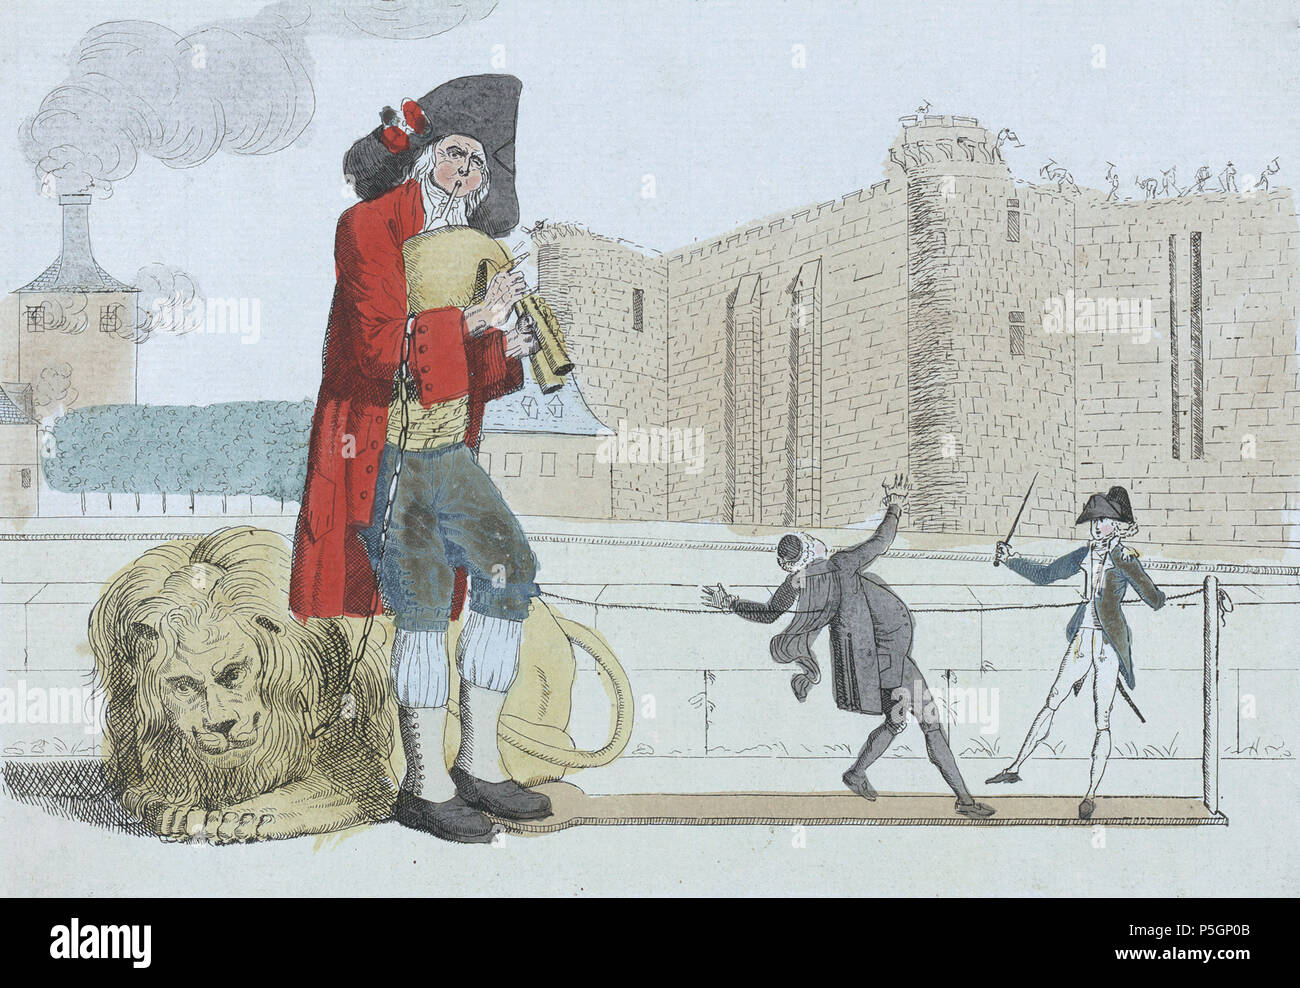 N/A. Inglese: Adieu Bastille stampa mostra un uomo giocando una zampogna,  dietro di lui si trova un leone su una catena che si è posato sul suo  braccio destro, il suo piede